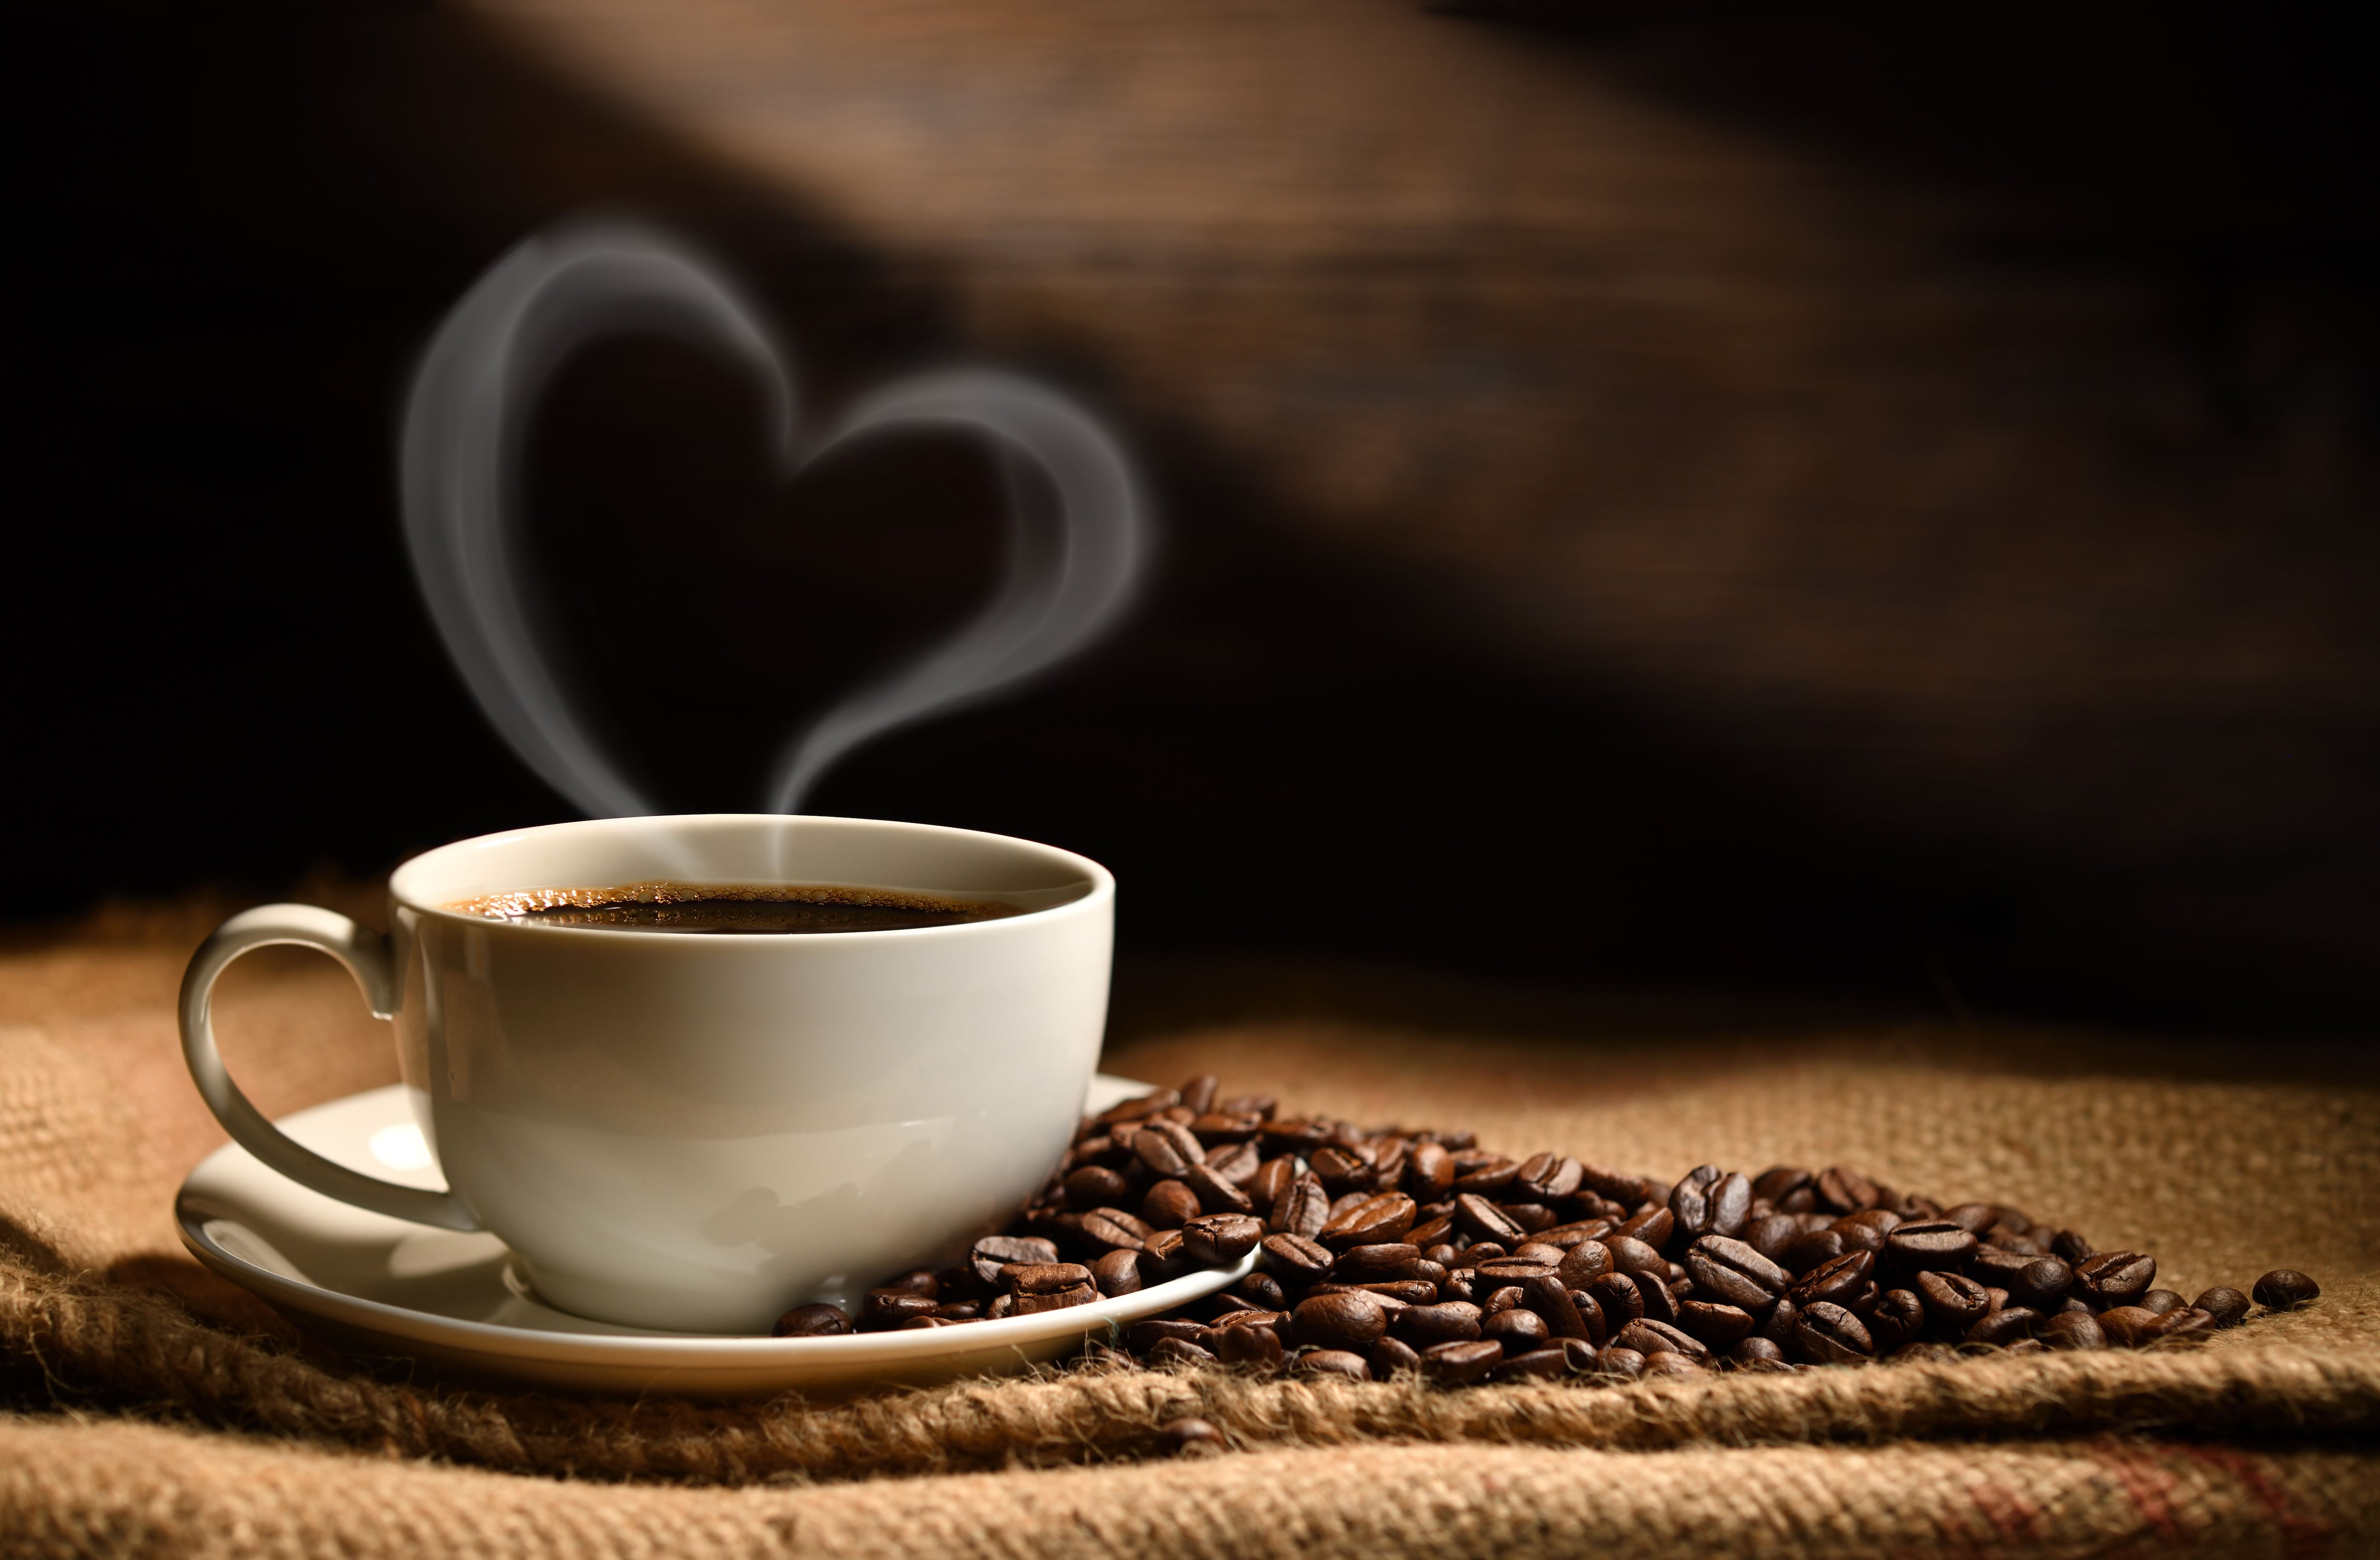 Cómo preparar la taza de café perfecta, según la ciencia - Infobae